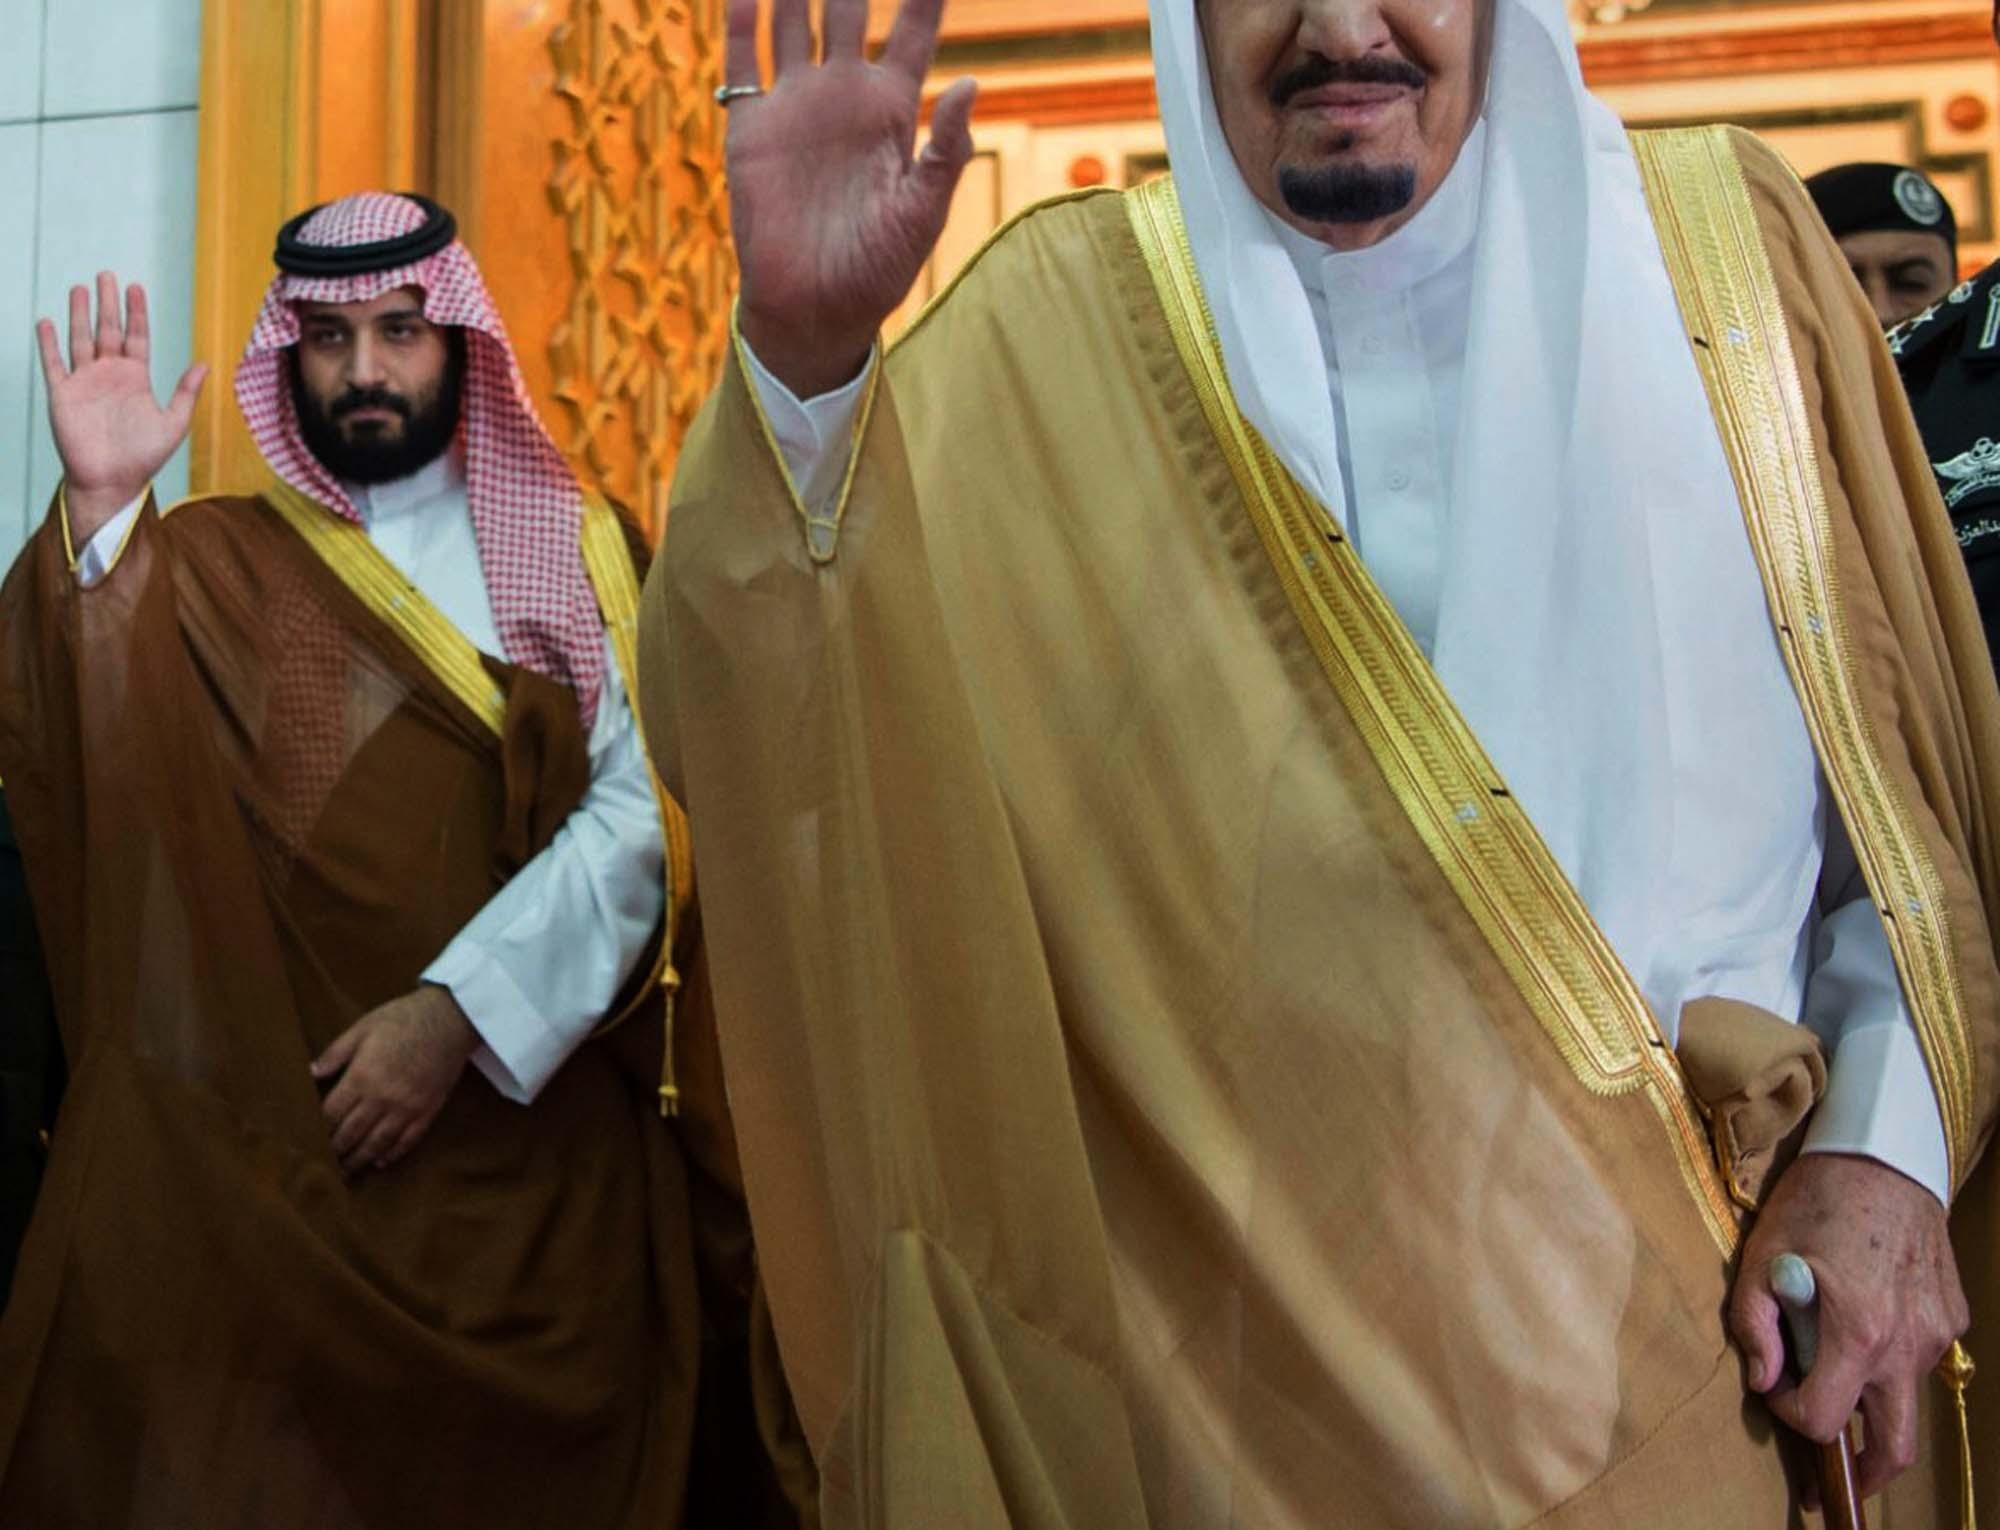 LUKSUZ: NAJSKUPLJE LETOVANJE U ISTORIJI! Saudijski kralj dao 100 miliona dolara na odmor